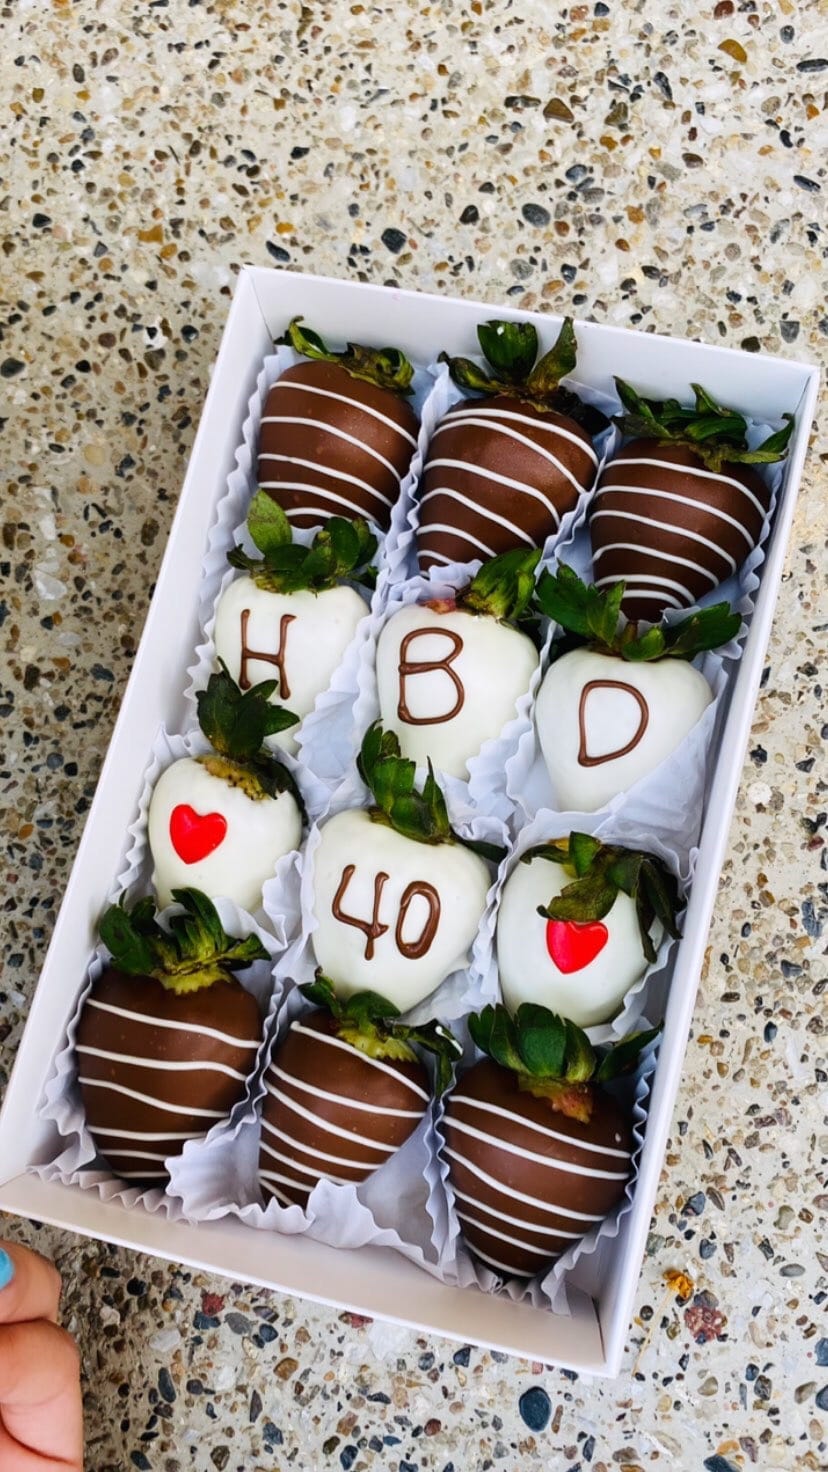 Regalo Personalizado de Chocolate para Cumpleaños y Aniversarios”